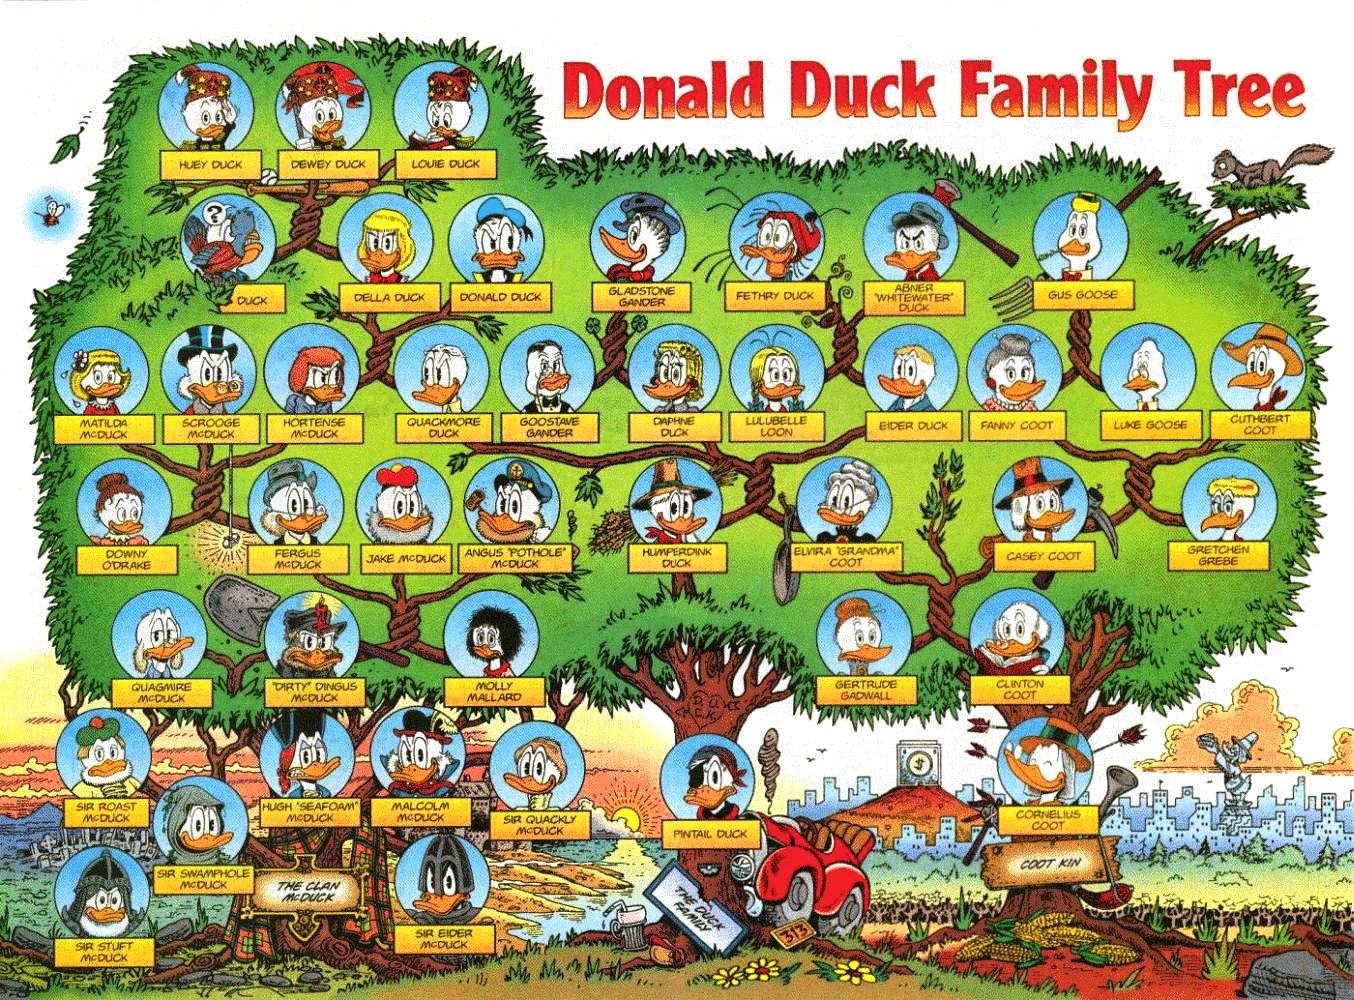 Donald duck pussy pics porno